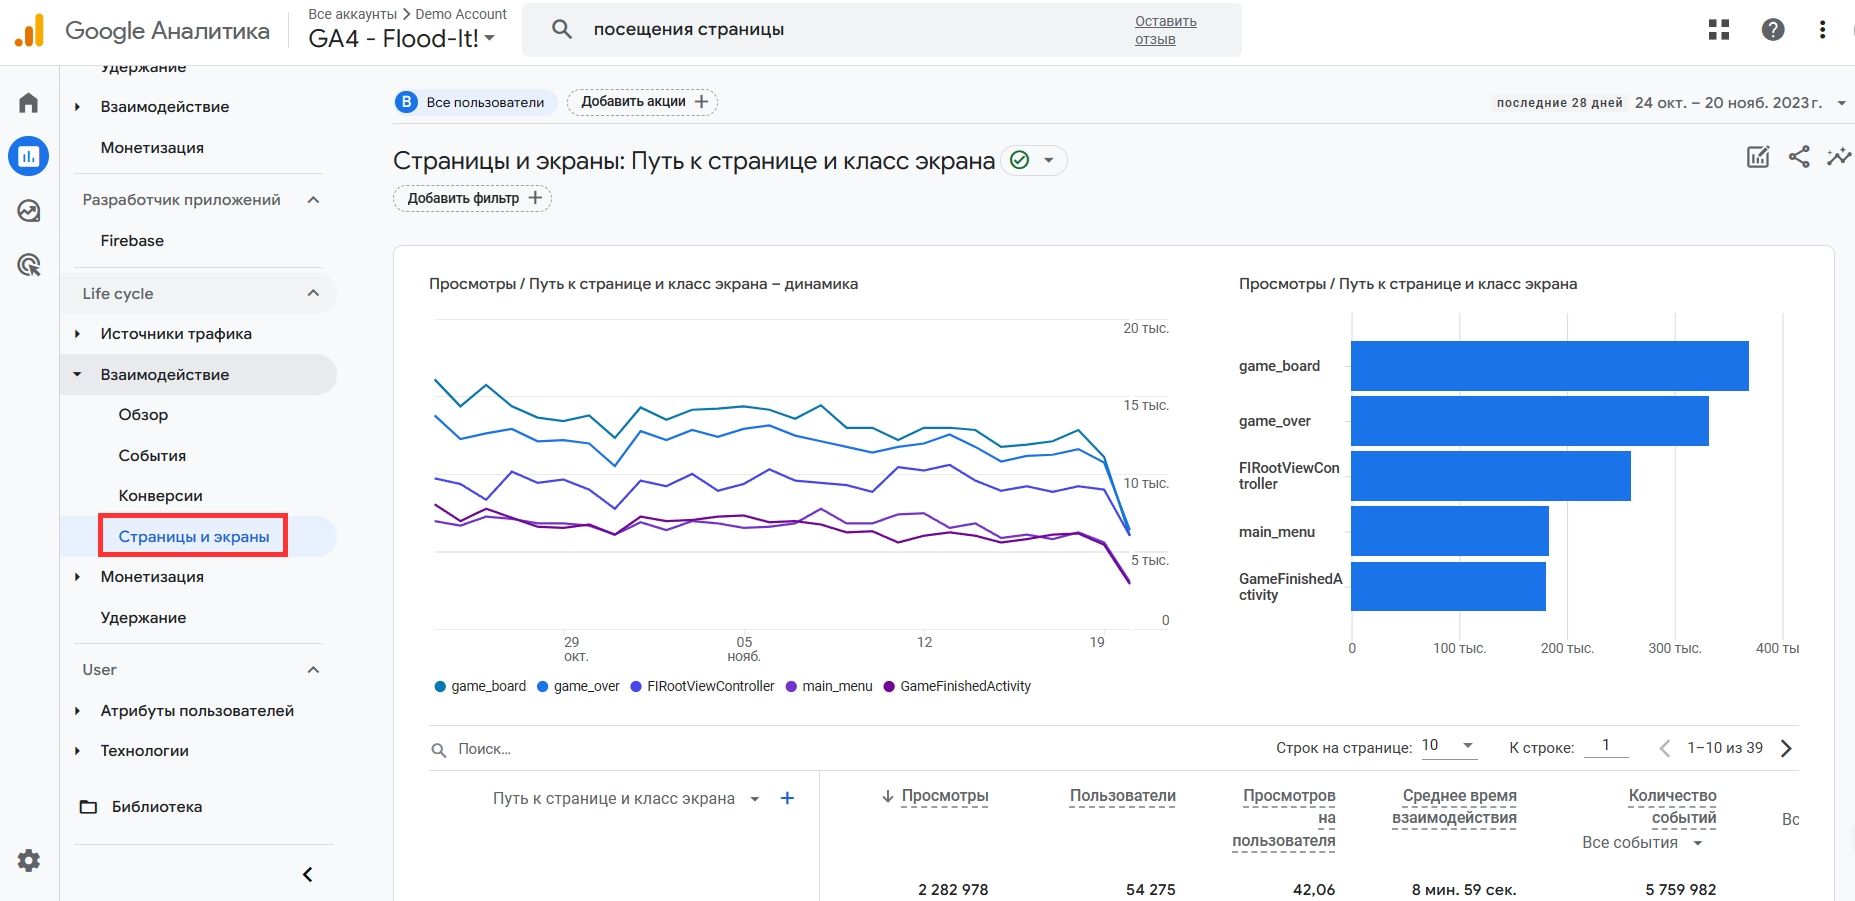 Пример отчета «Страницы и экраны» в Google Analytics 4